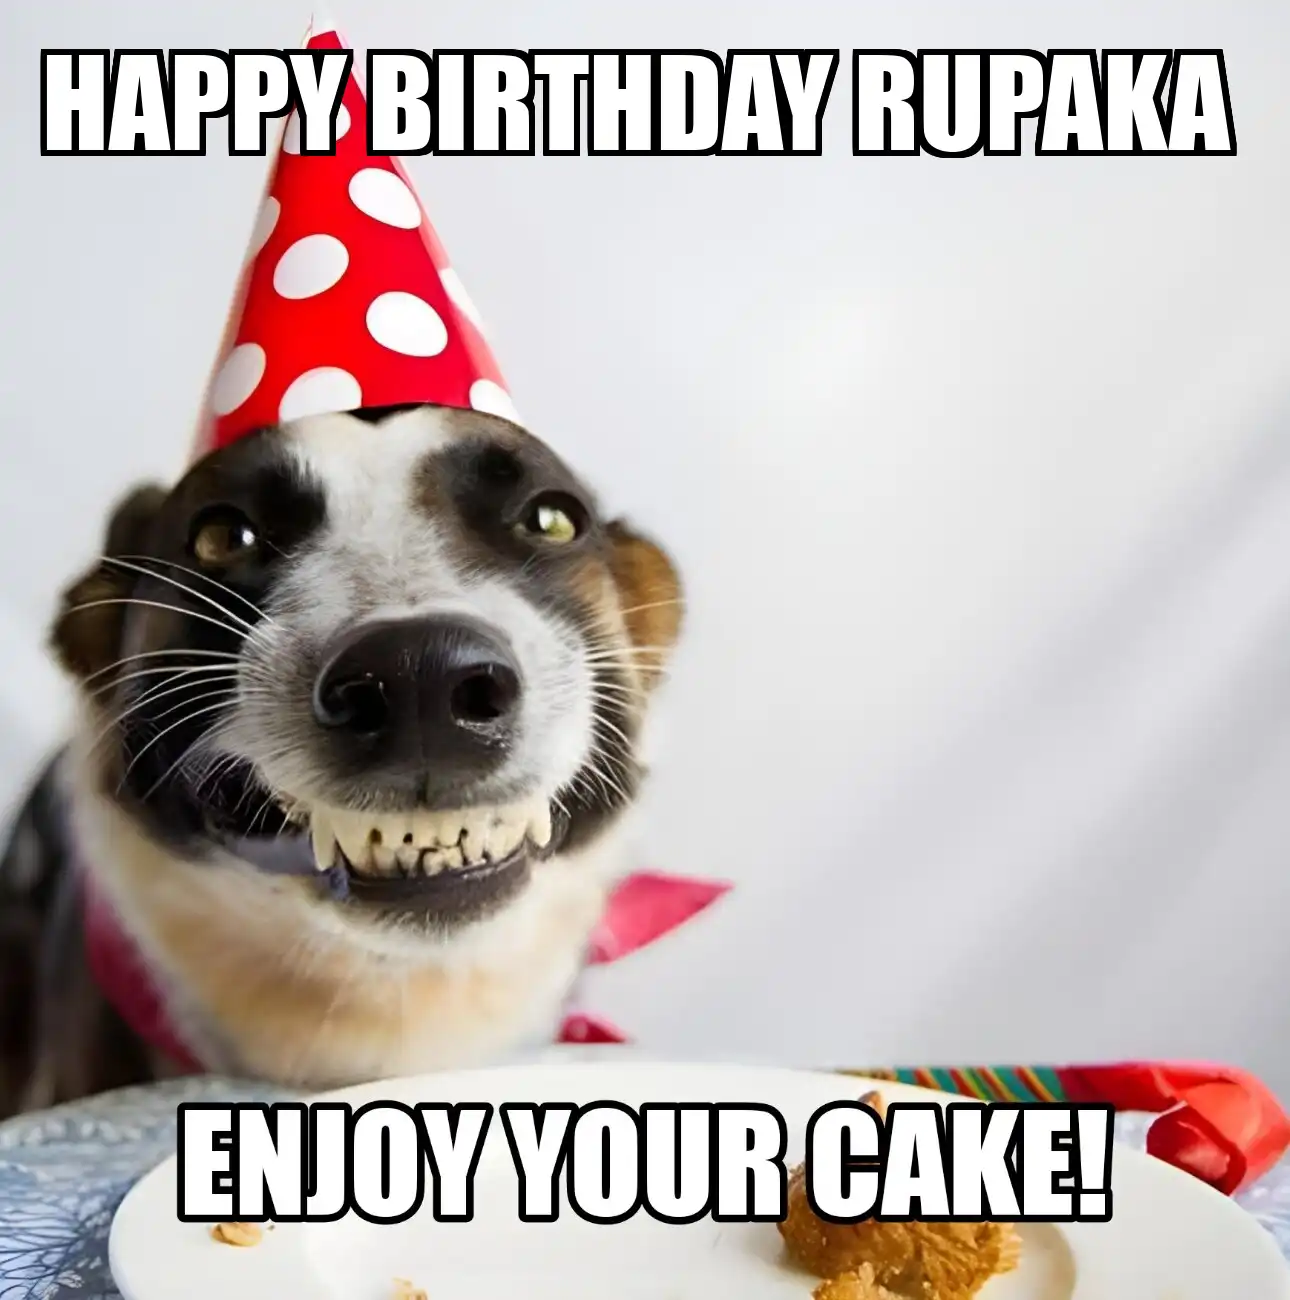 Happy Birthday Rupaka Enjoy Your Cake Dog Meme